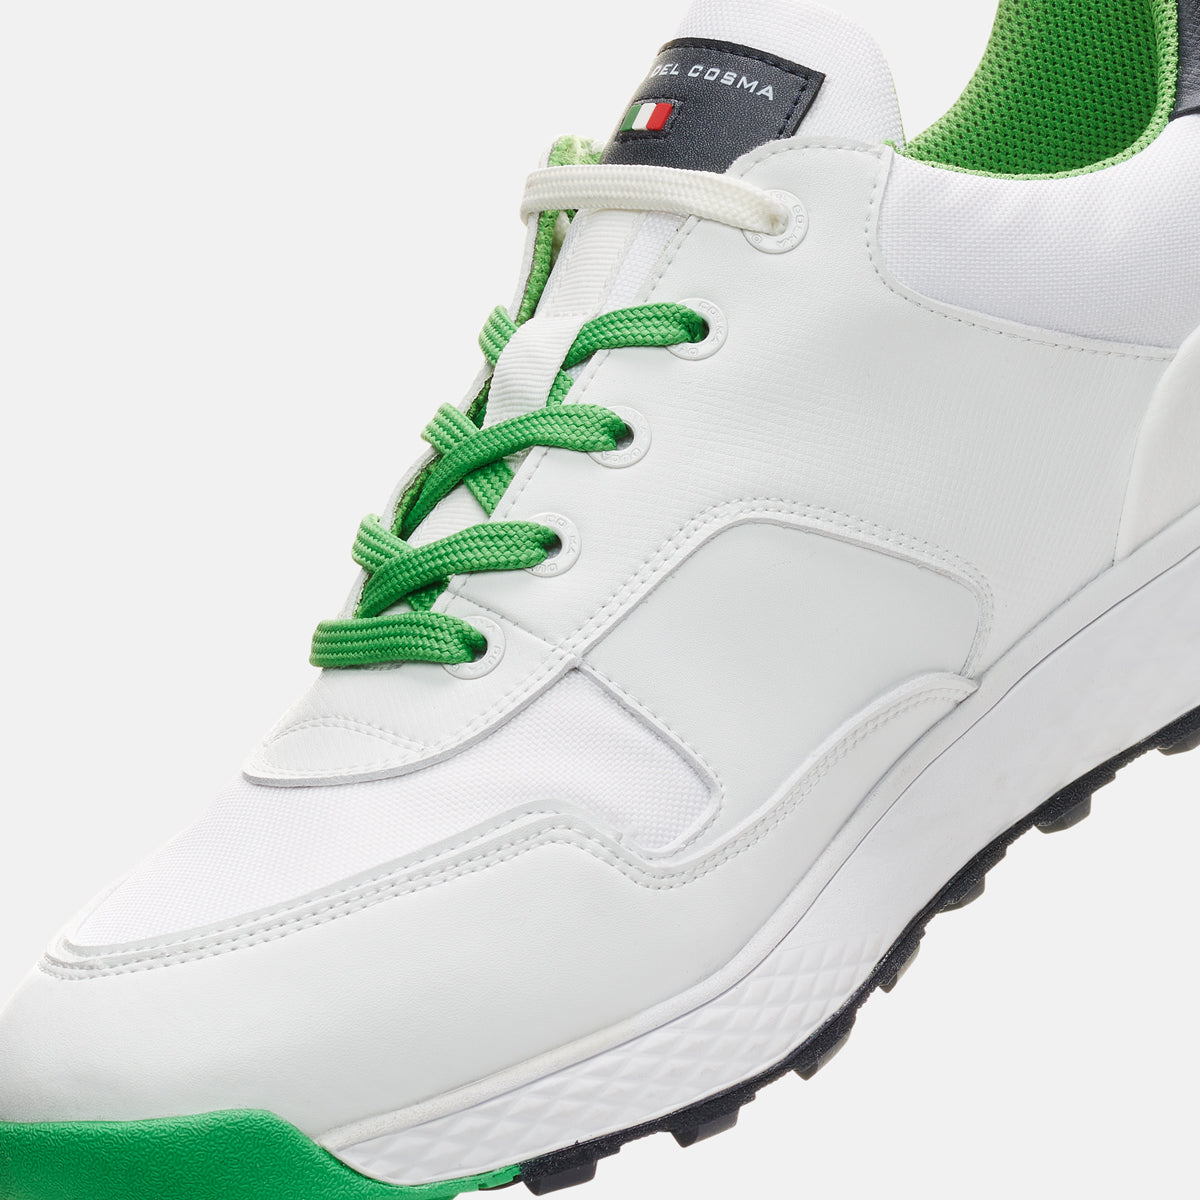 Pagani - White/Green Men's Golf Shoes